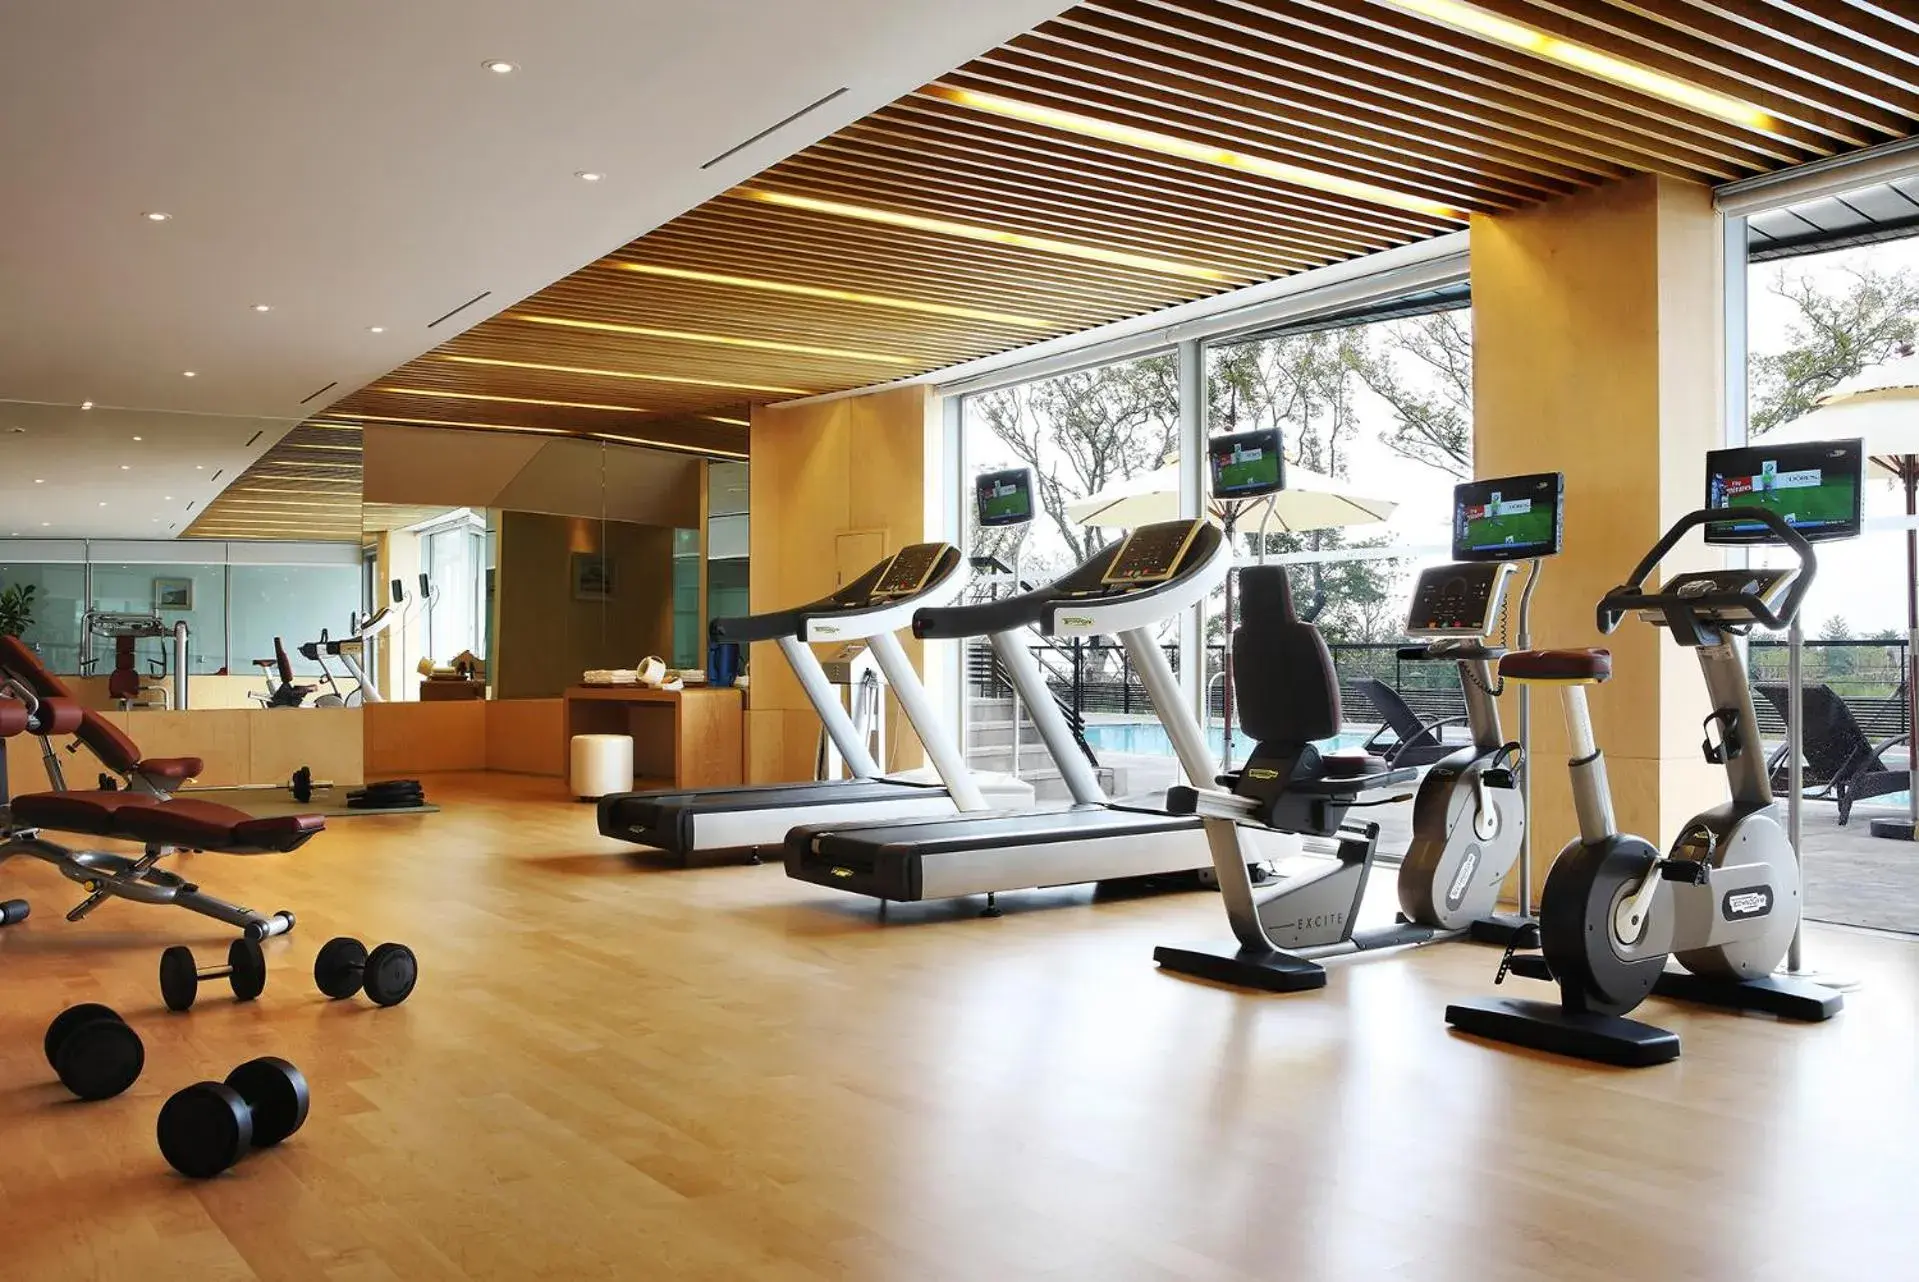 Fitness centre/facilities, Fitness Center/Facilities in Lotte Resort Jeju Artvillas